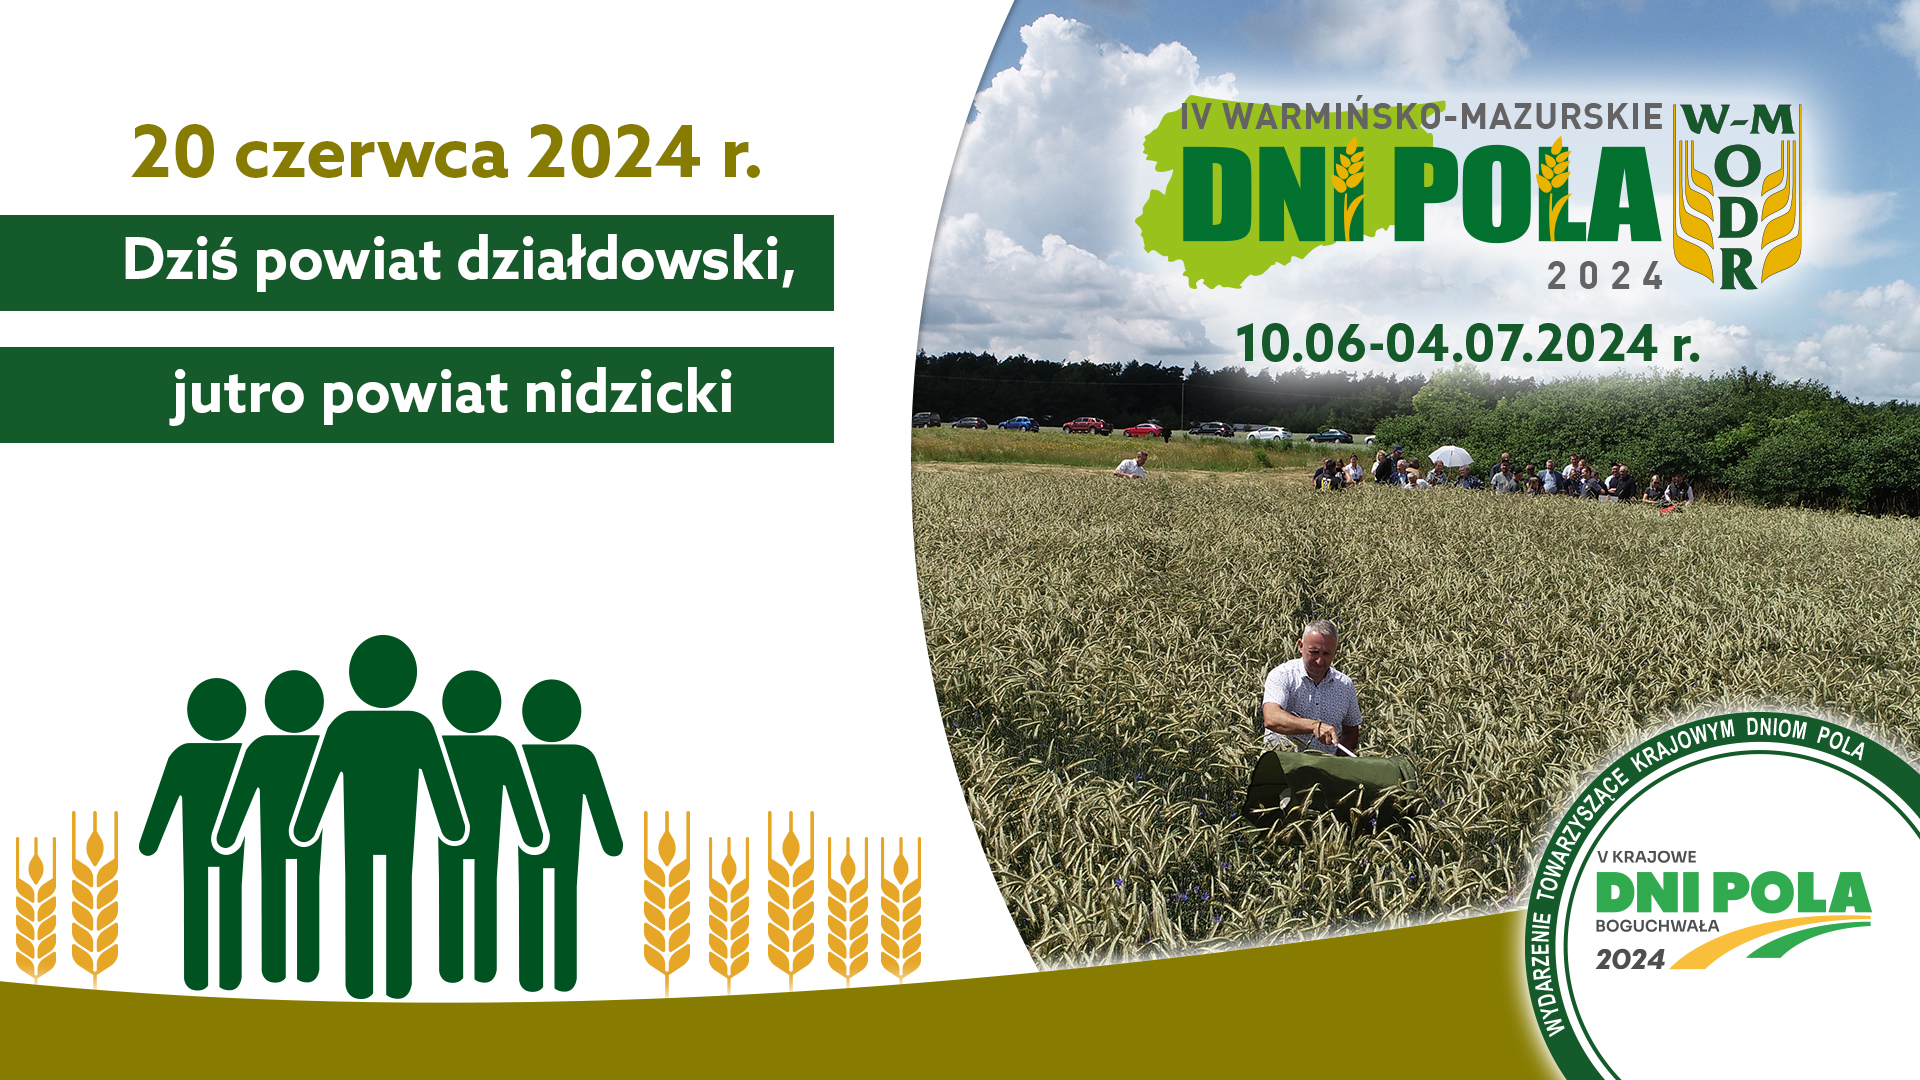 Trwają IV Warmińsko-Mazurskie Dni Pola 2024 – 20.06.2024 odwiedzamy powiat działdowski